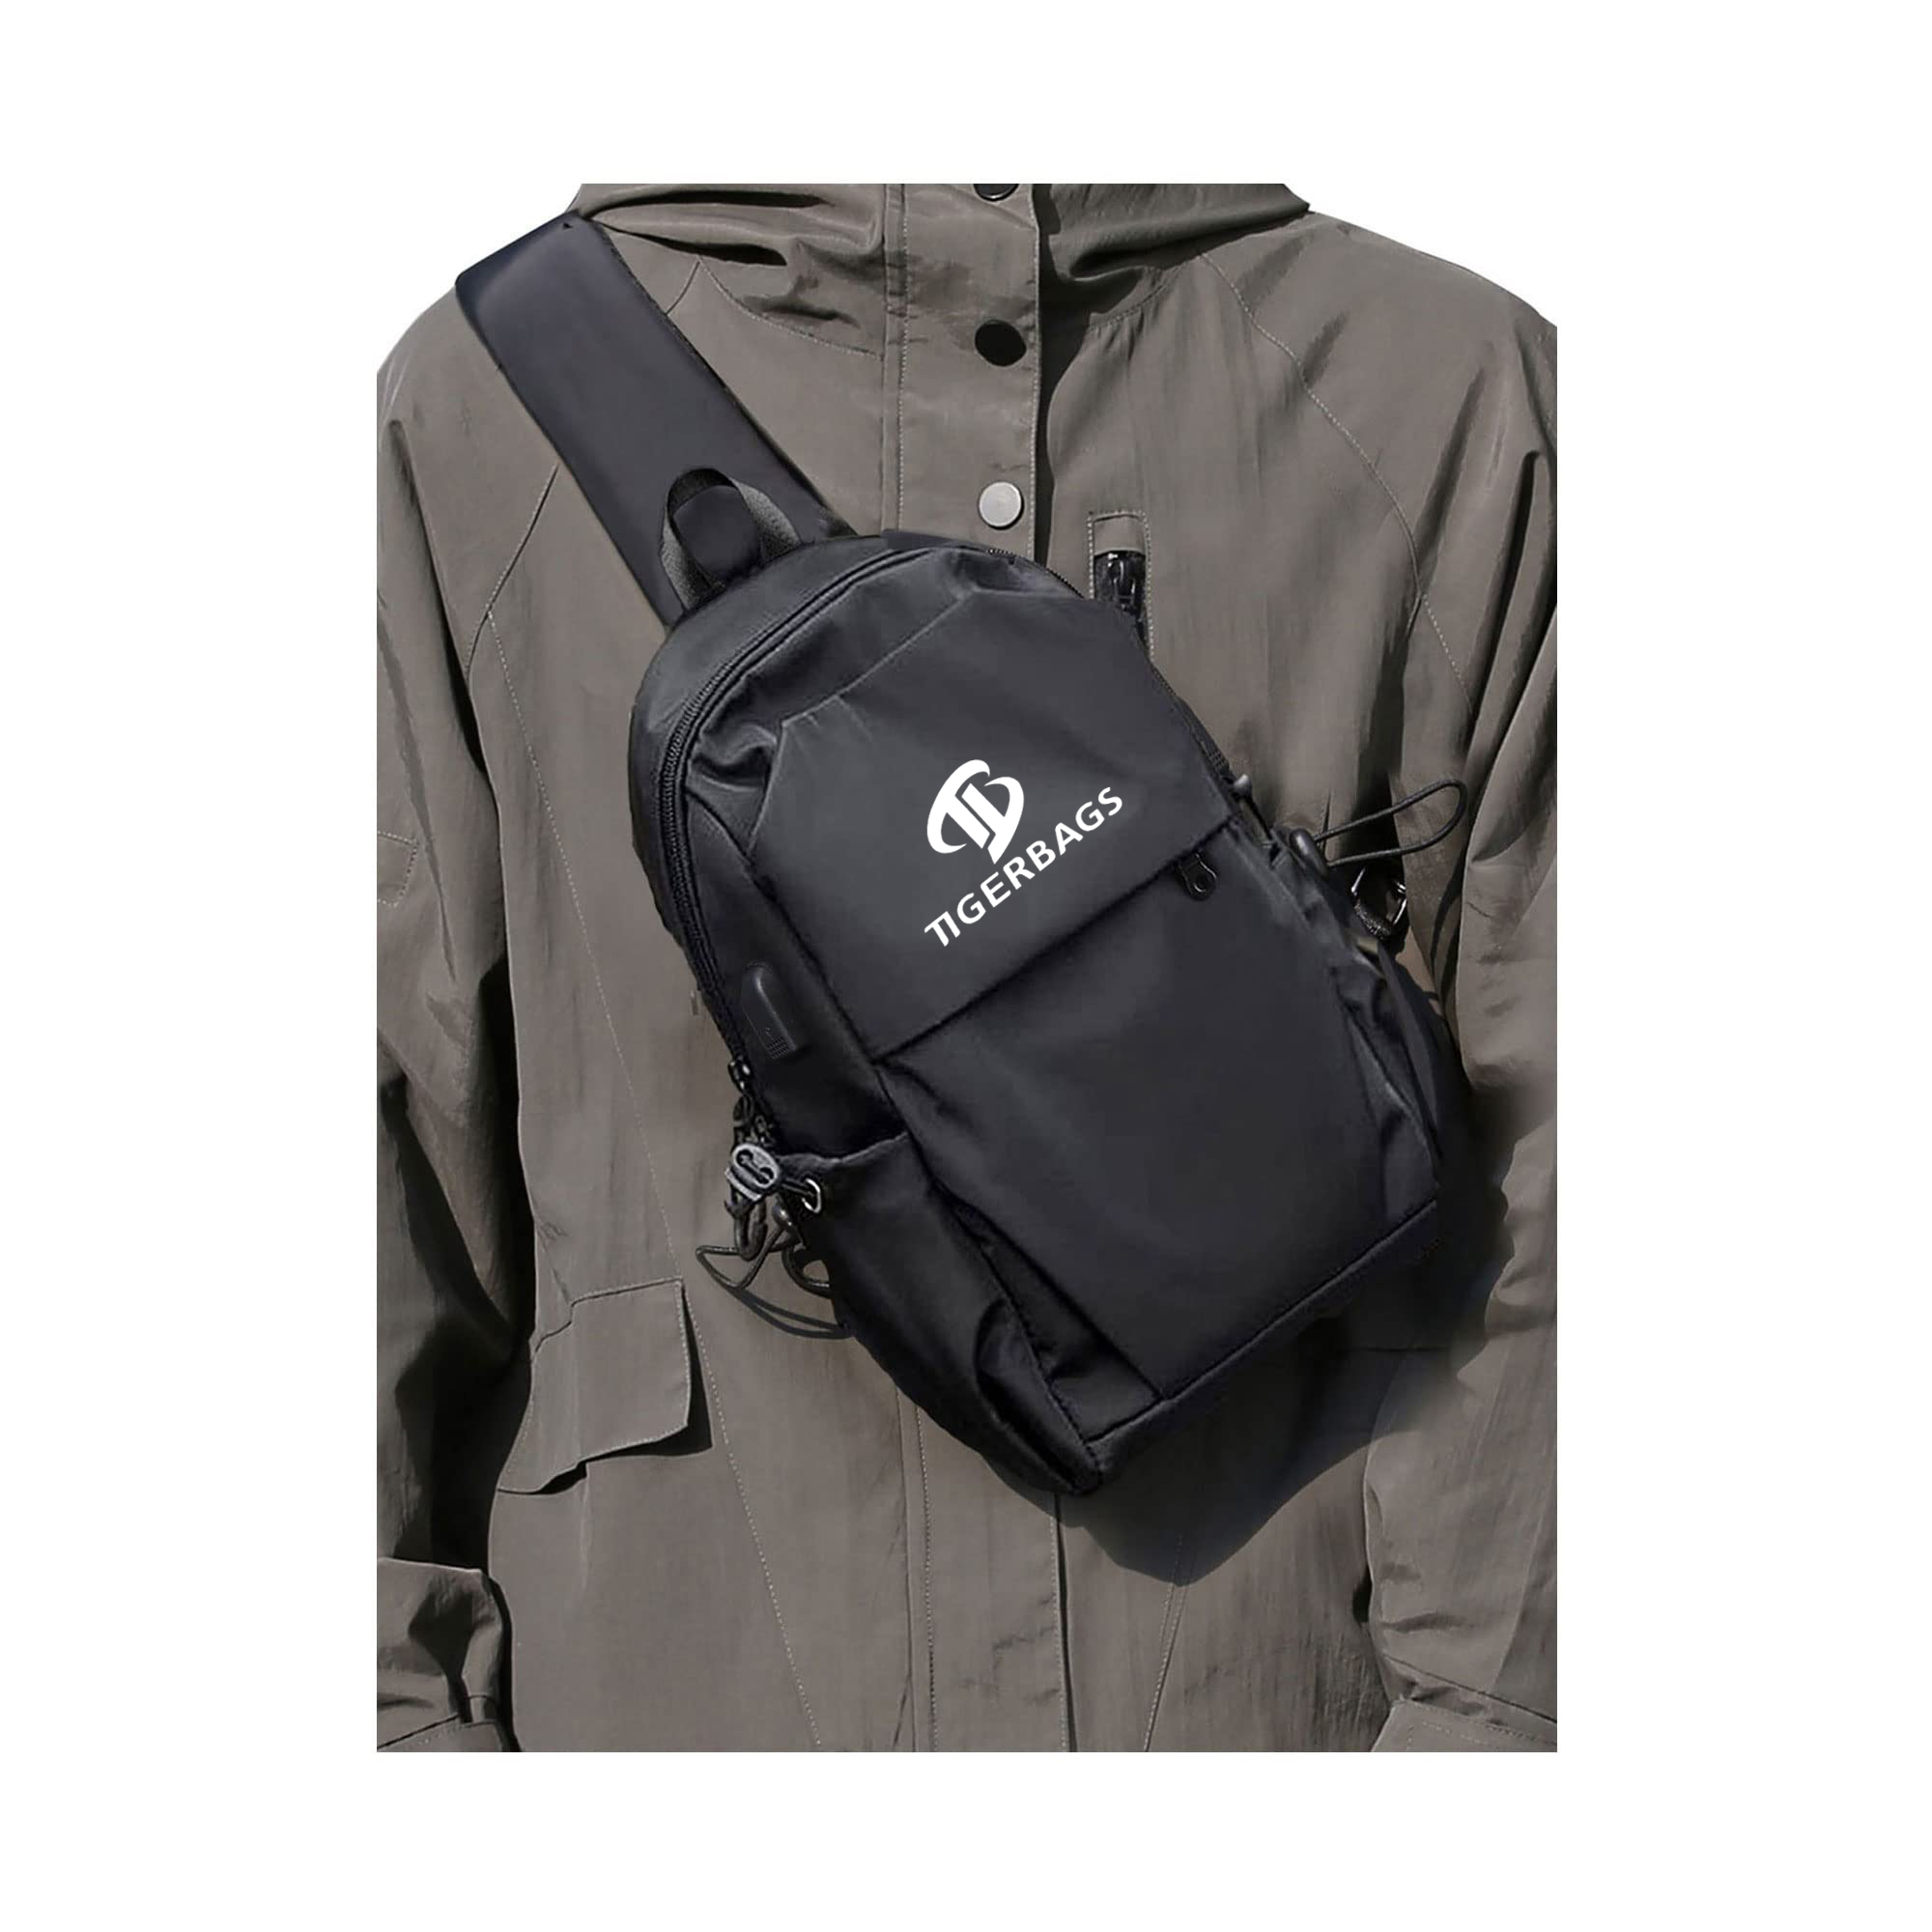 OEM/ODM Manufacturer Fortnite Backpack - Crossbody bag for men and women shoulder bag USB charger chest bag – TIGER